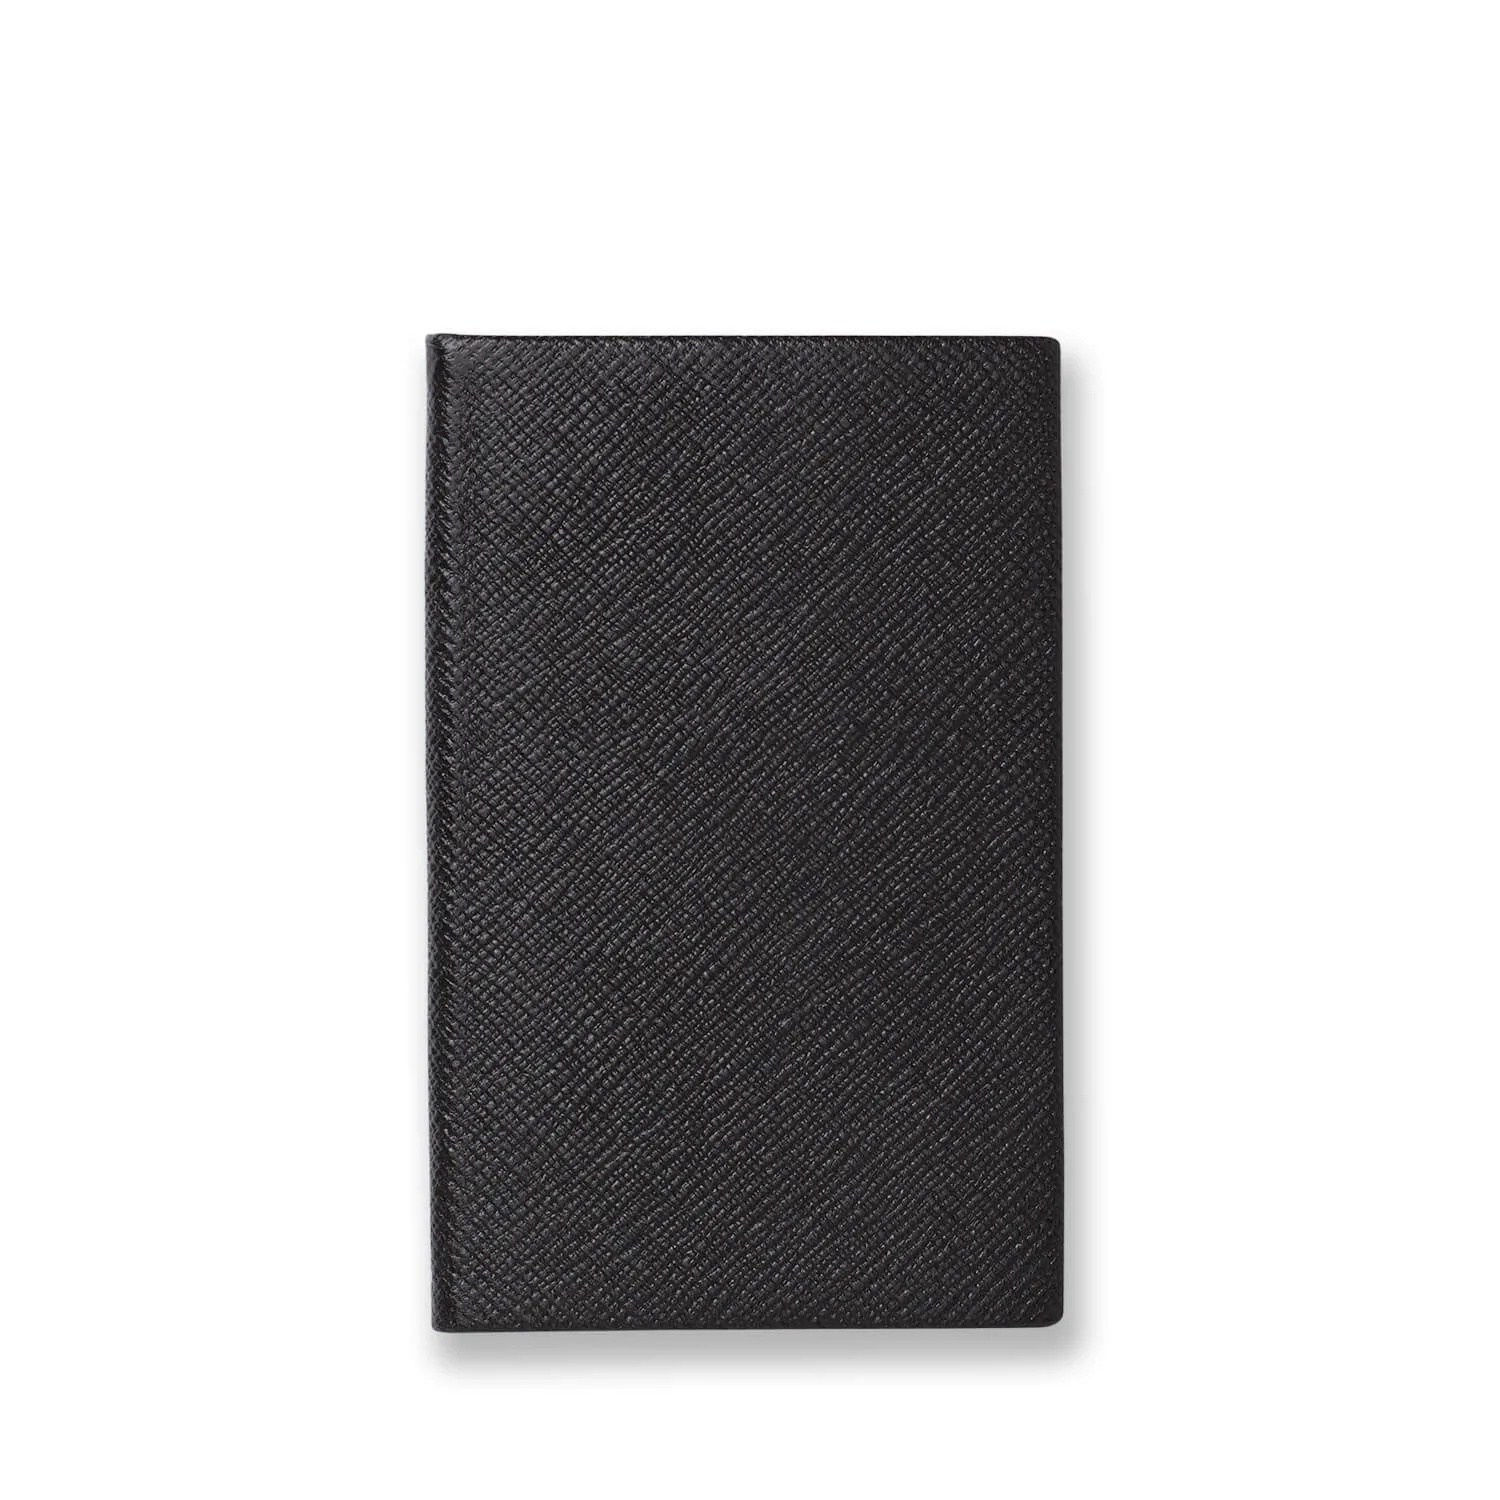 Smythson Panama Notebook - Black Image 1